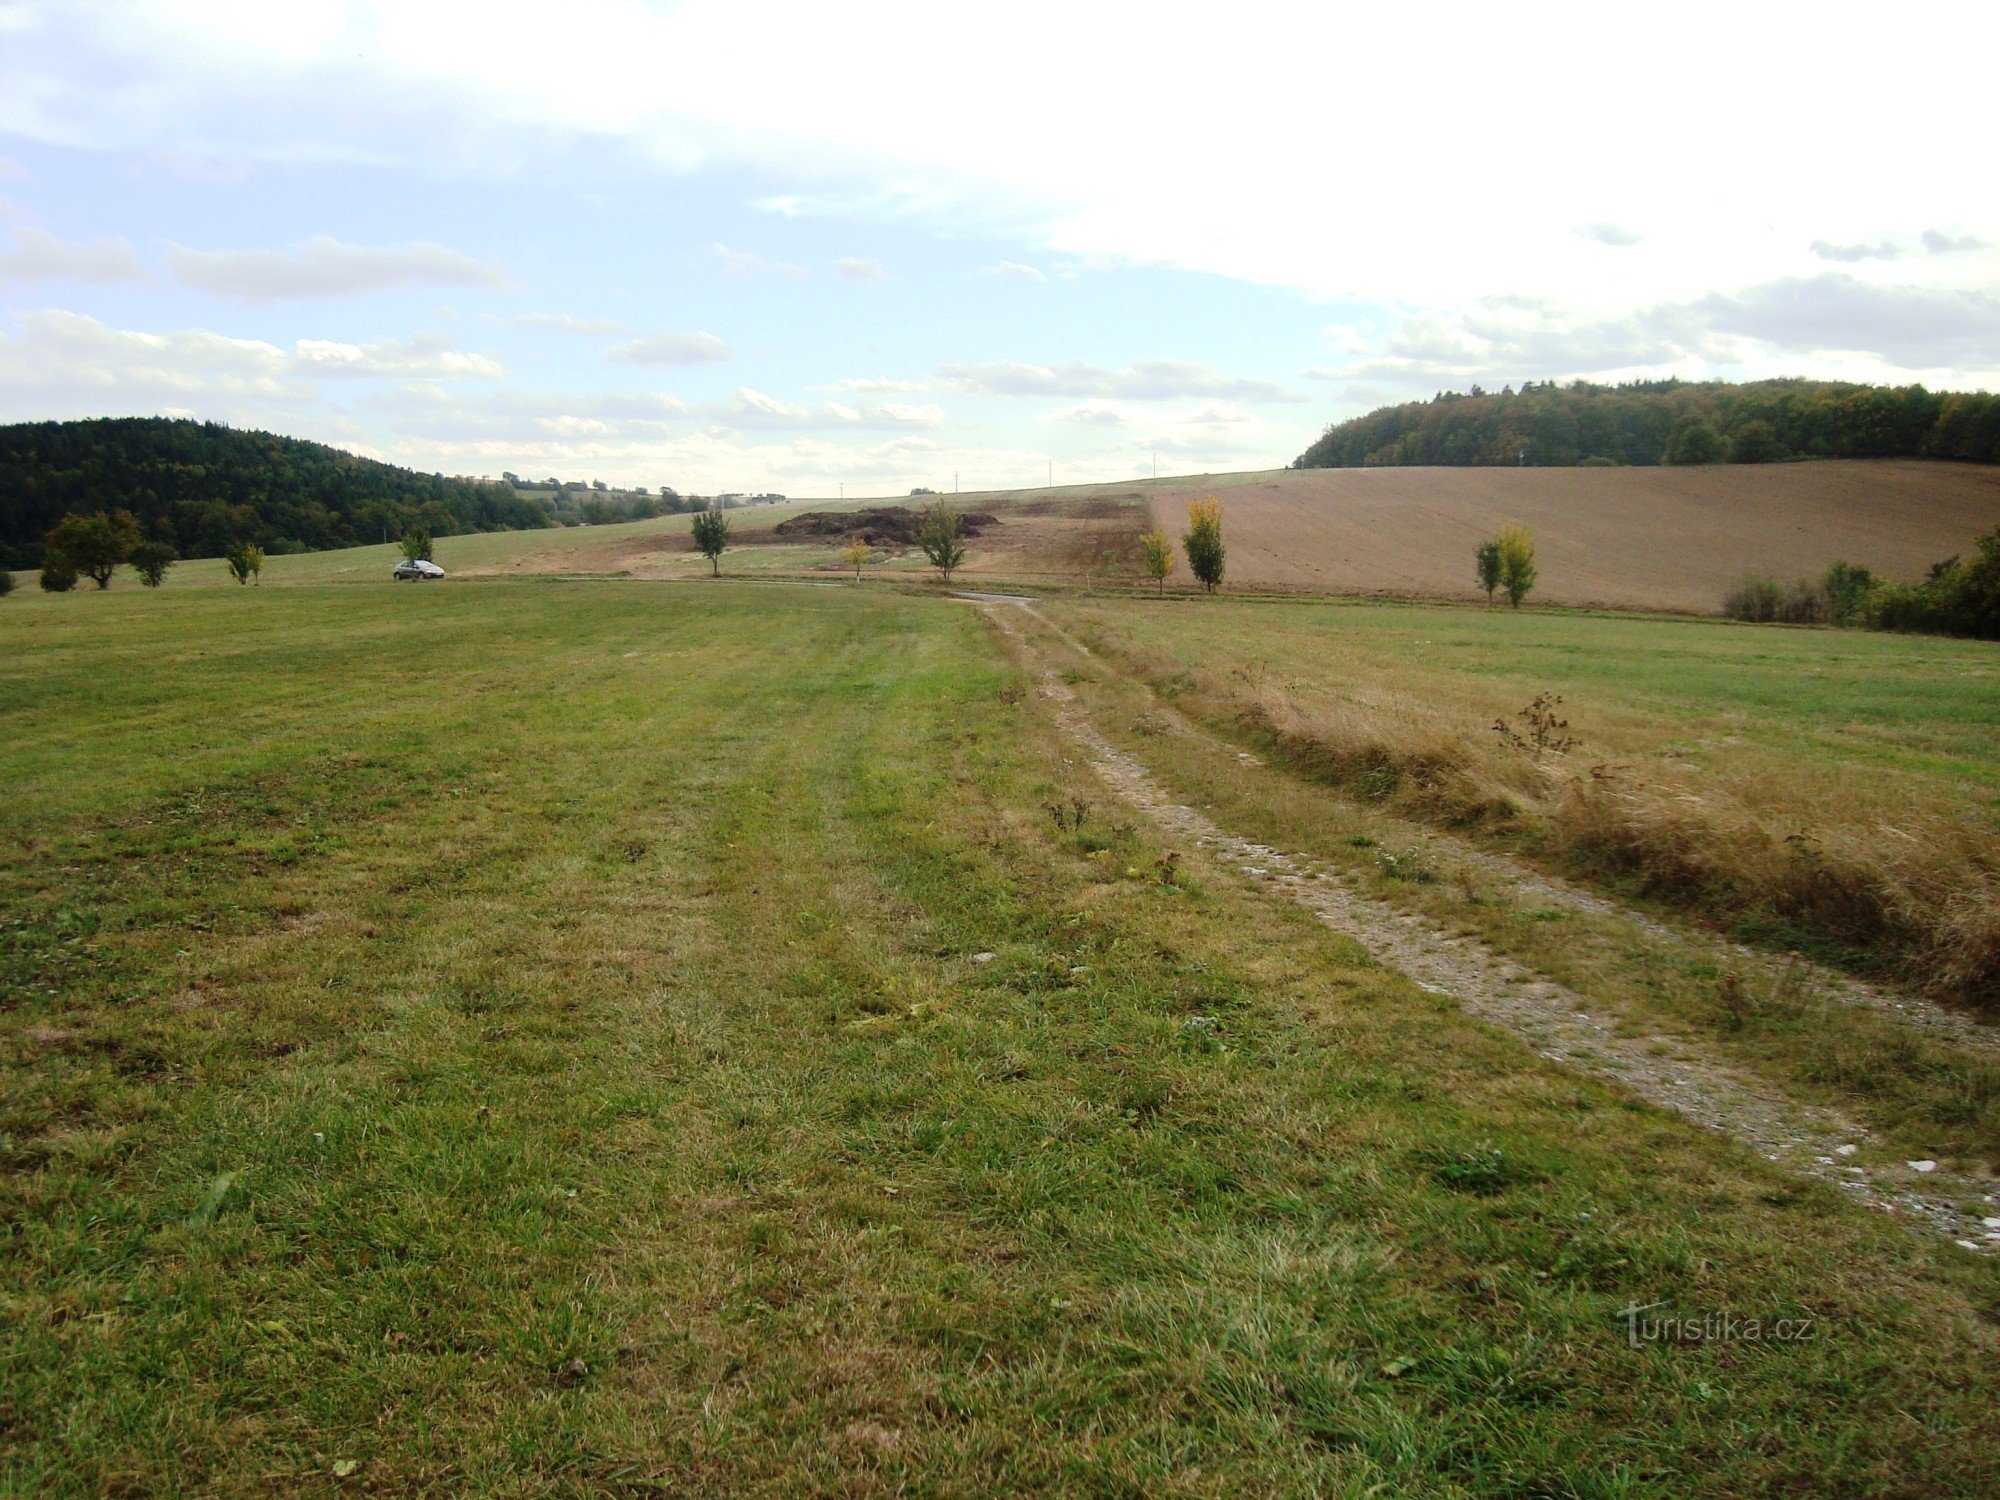 Természetvédelmi terület Prűchodnice-táj a rezervátum bekötőút közelében az F útról